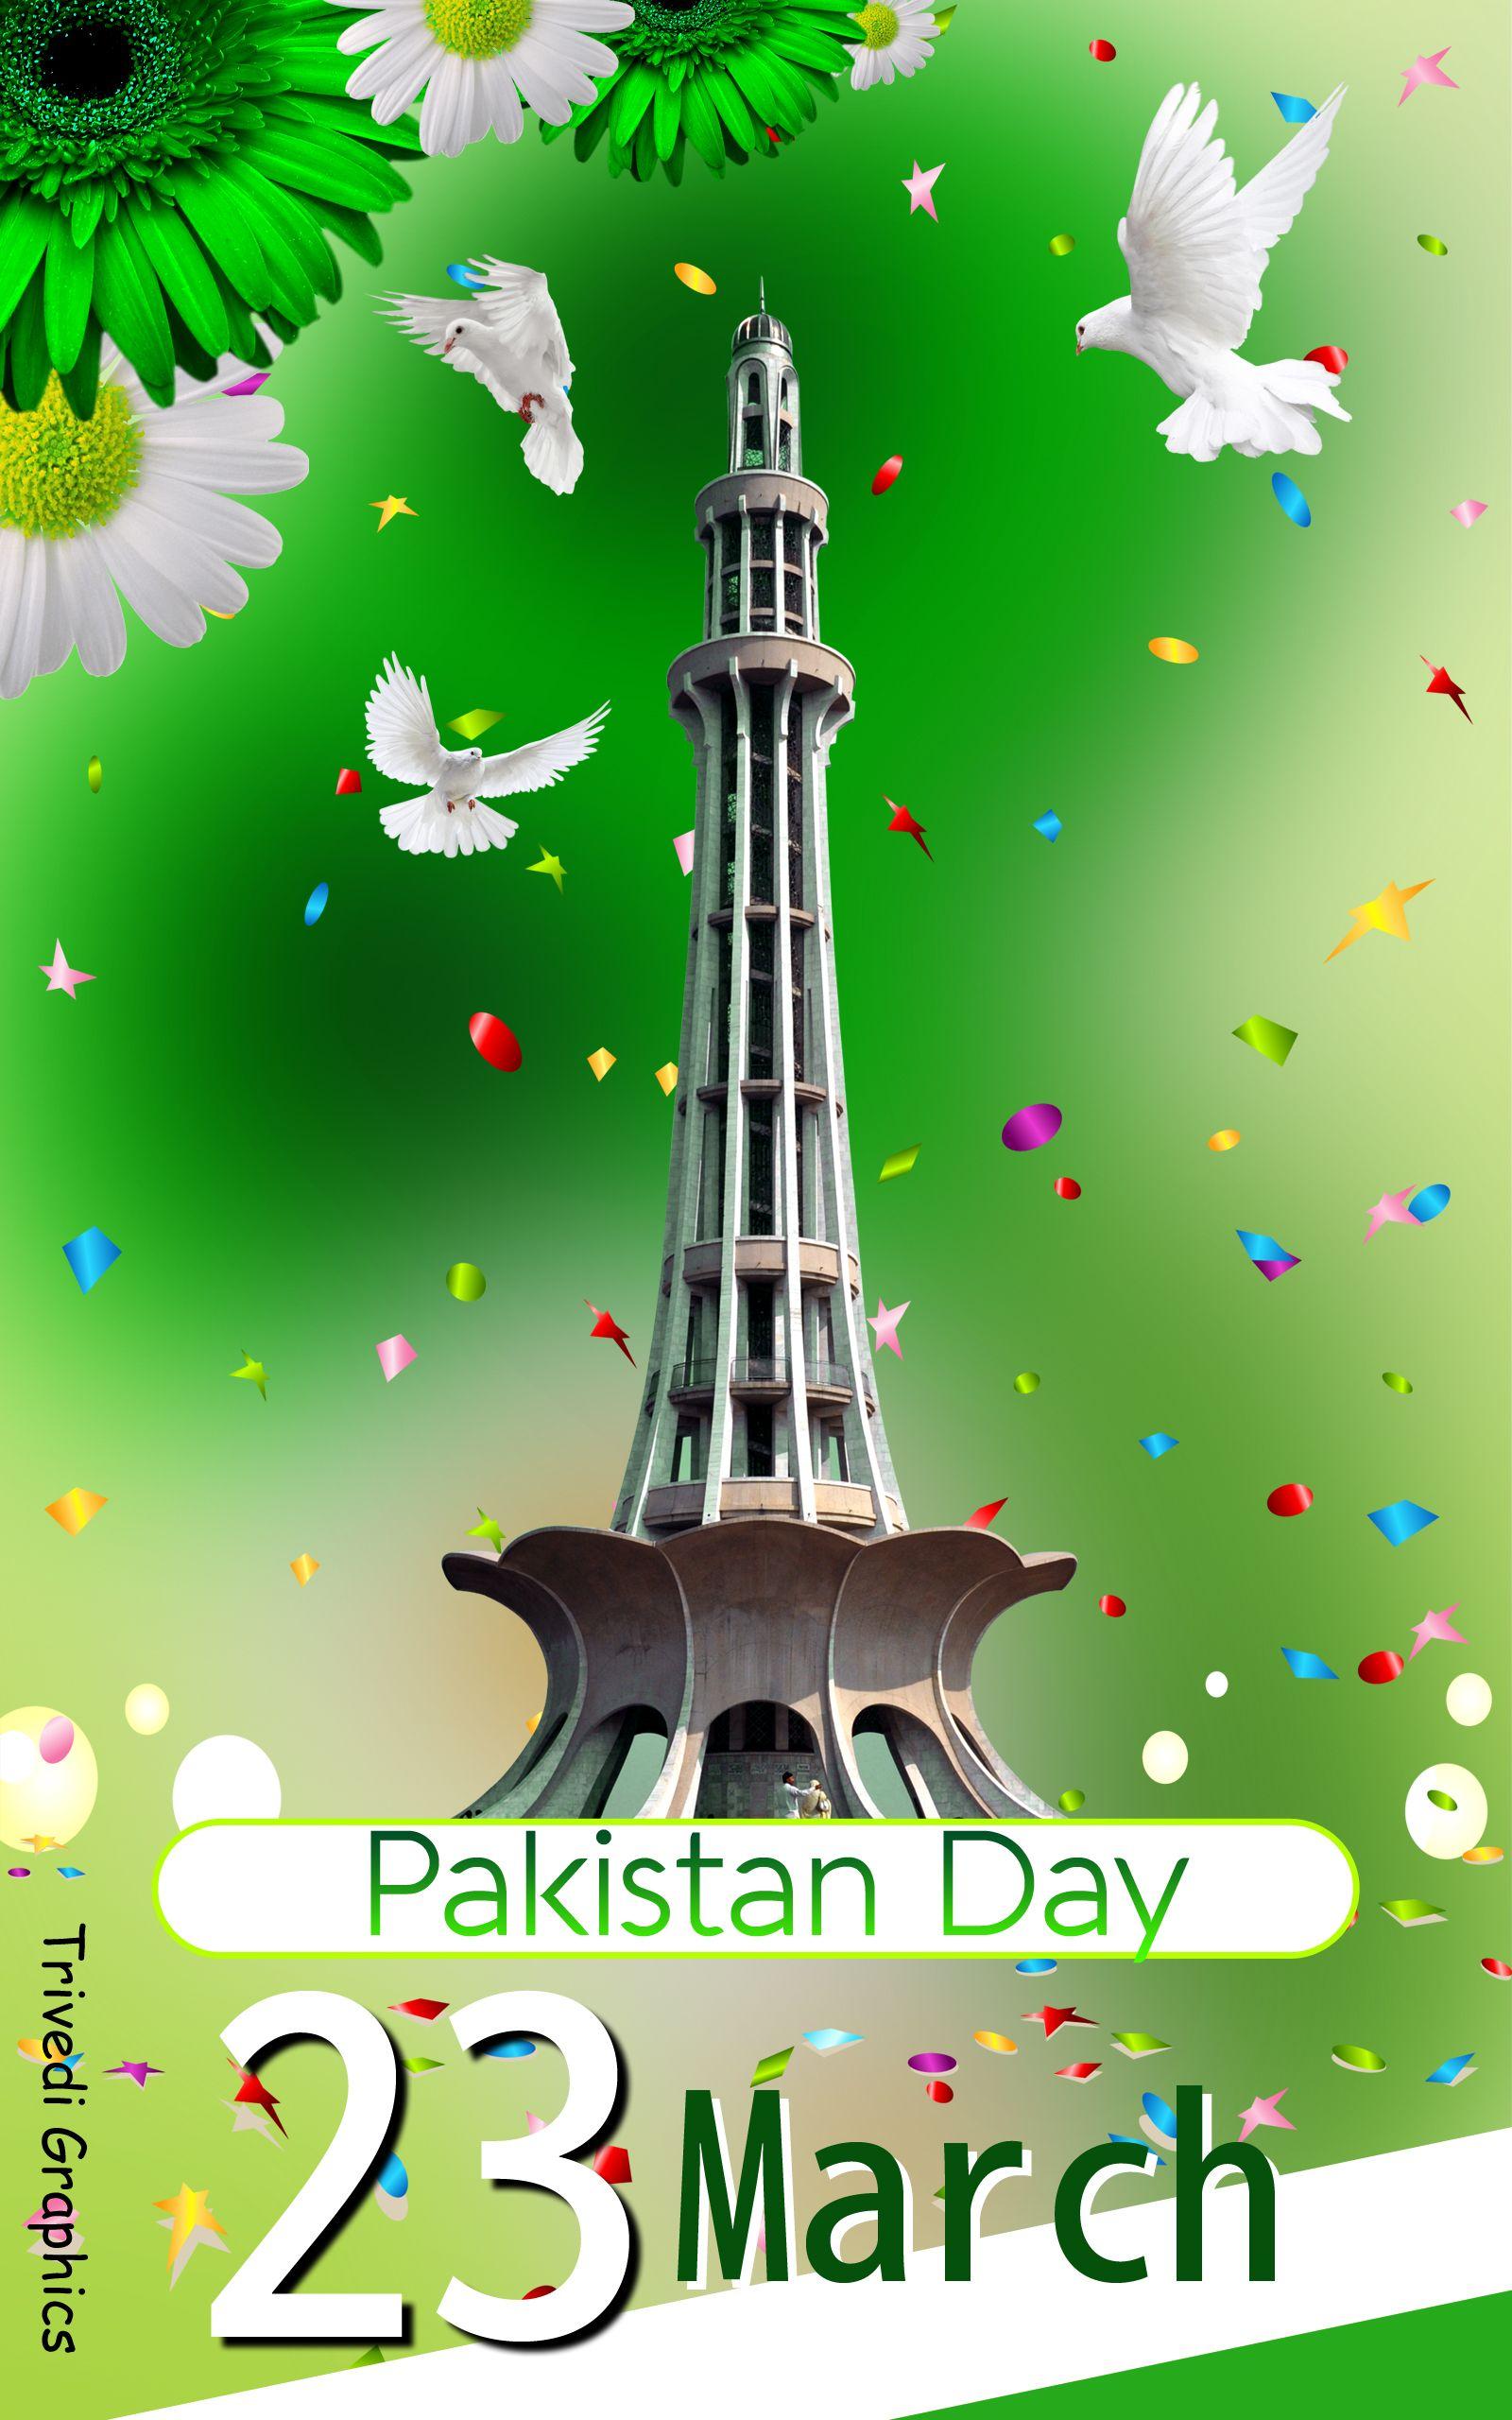 march pakistan day (2). Pakistan day, Pakistan day 23